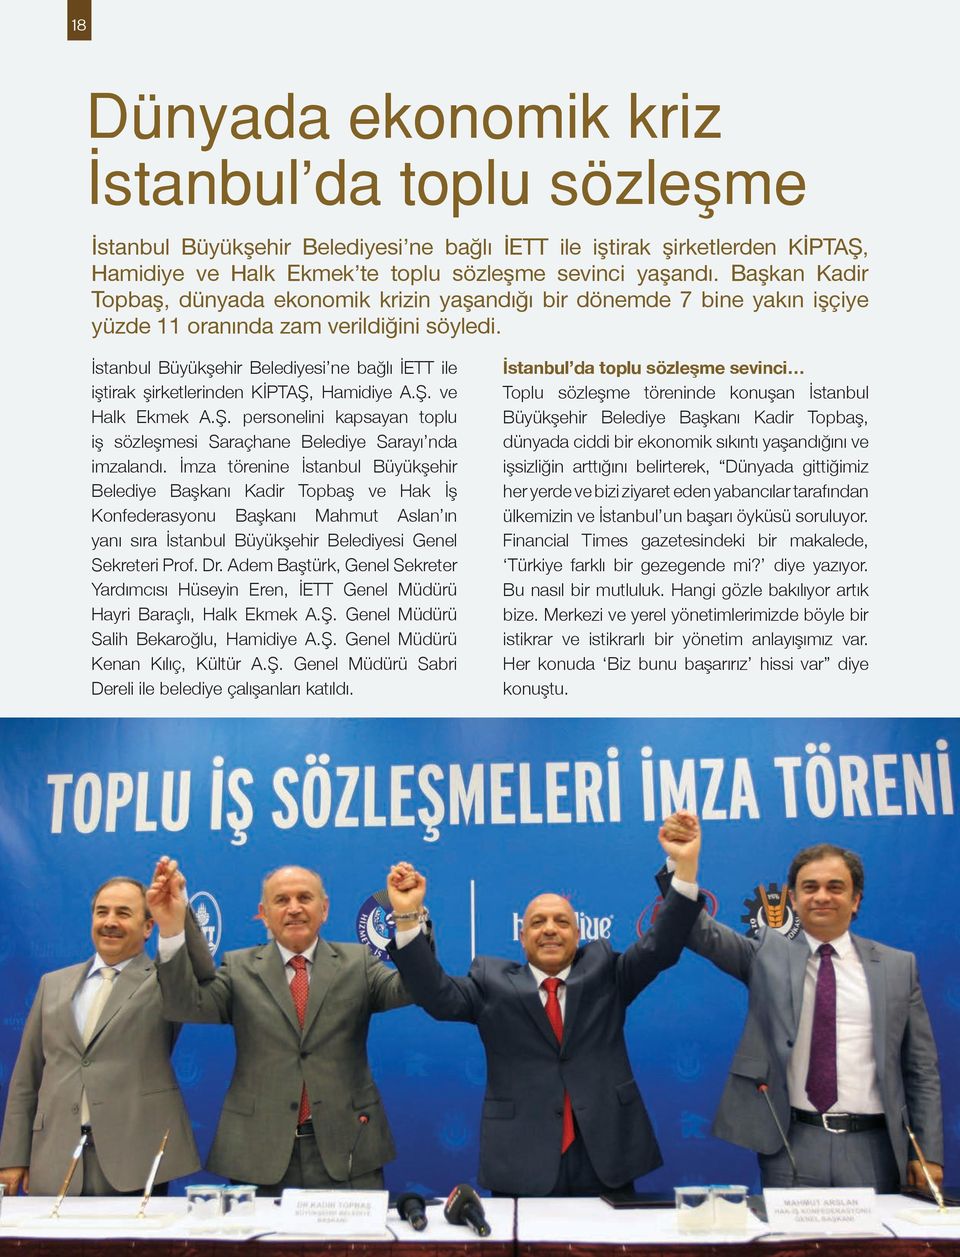 İstanbul Büyükşehir Belediyesi ne bağlı İETT ile iştirak şirketlerinden KİPTAŞ, Hamidiye A.Ş. ve Halk Ekmek A.Ş. personelini kapsayan toplu iş sözleşmesi Saraçhane Belediye Sarayı nda imzalandı.